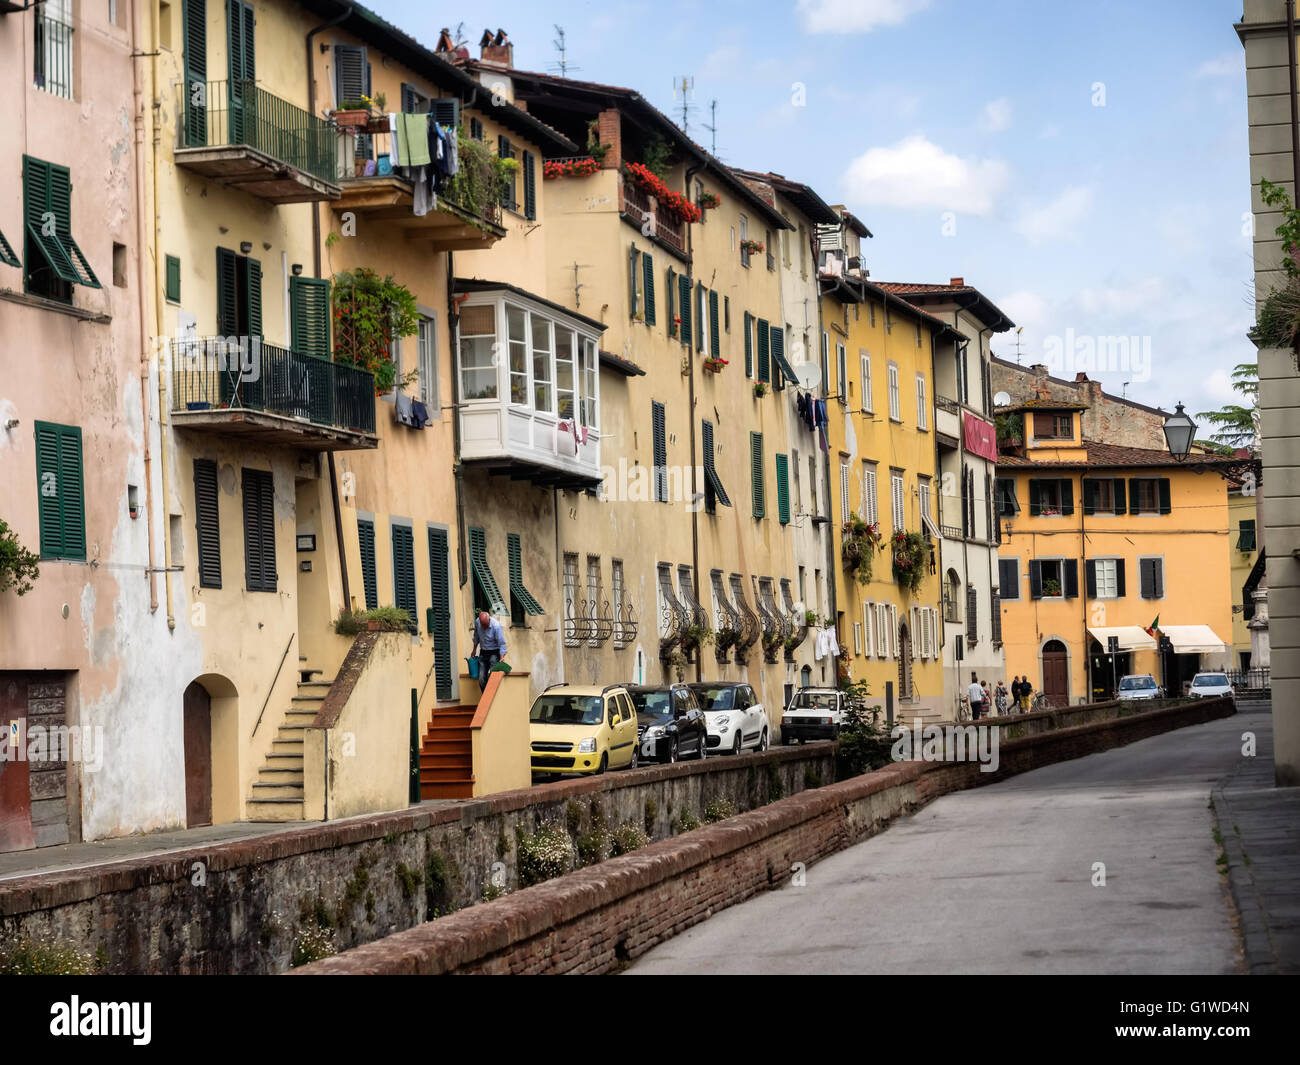 Via del Fosso mit Kanälen in Lucca, Italien Stockfoto